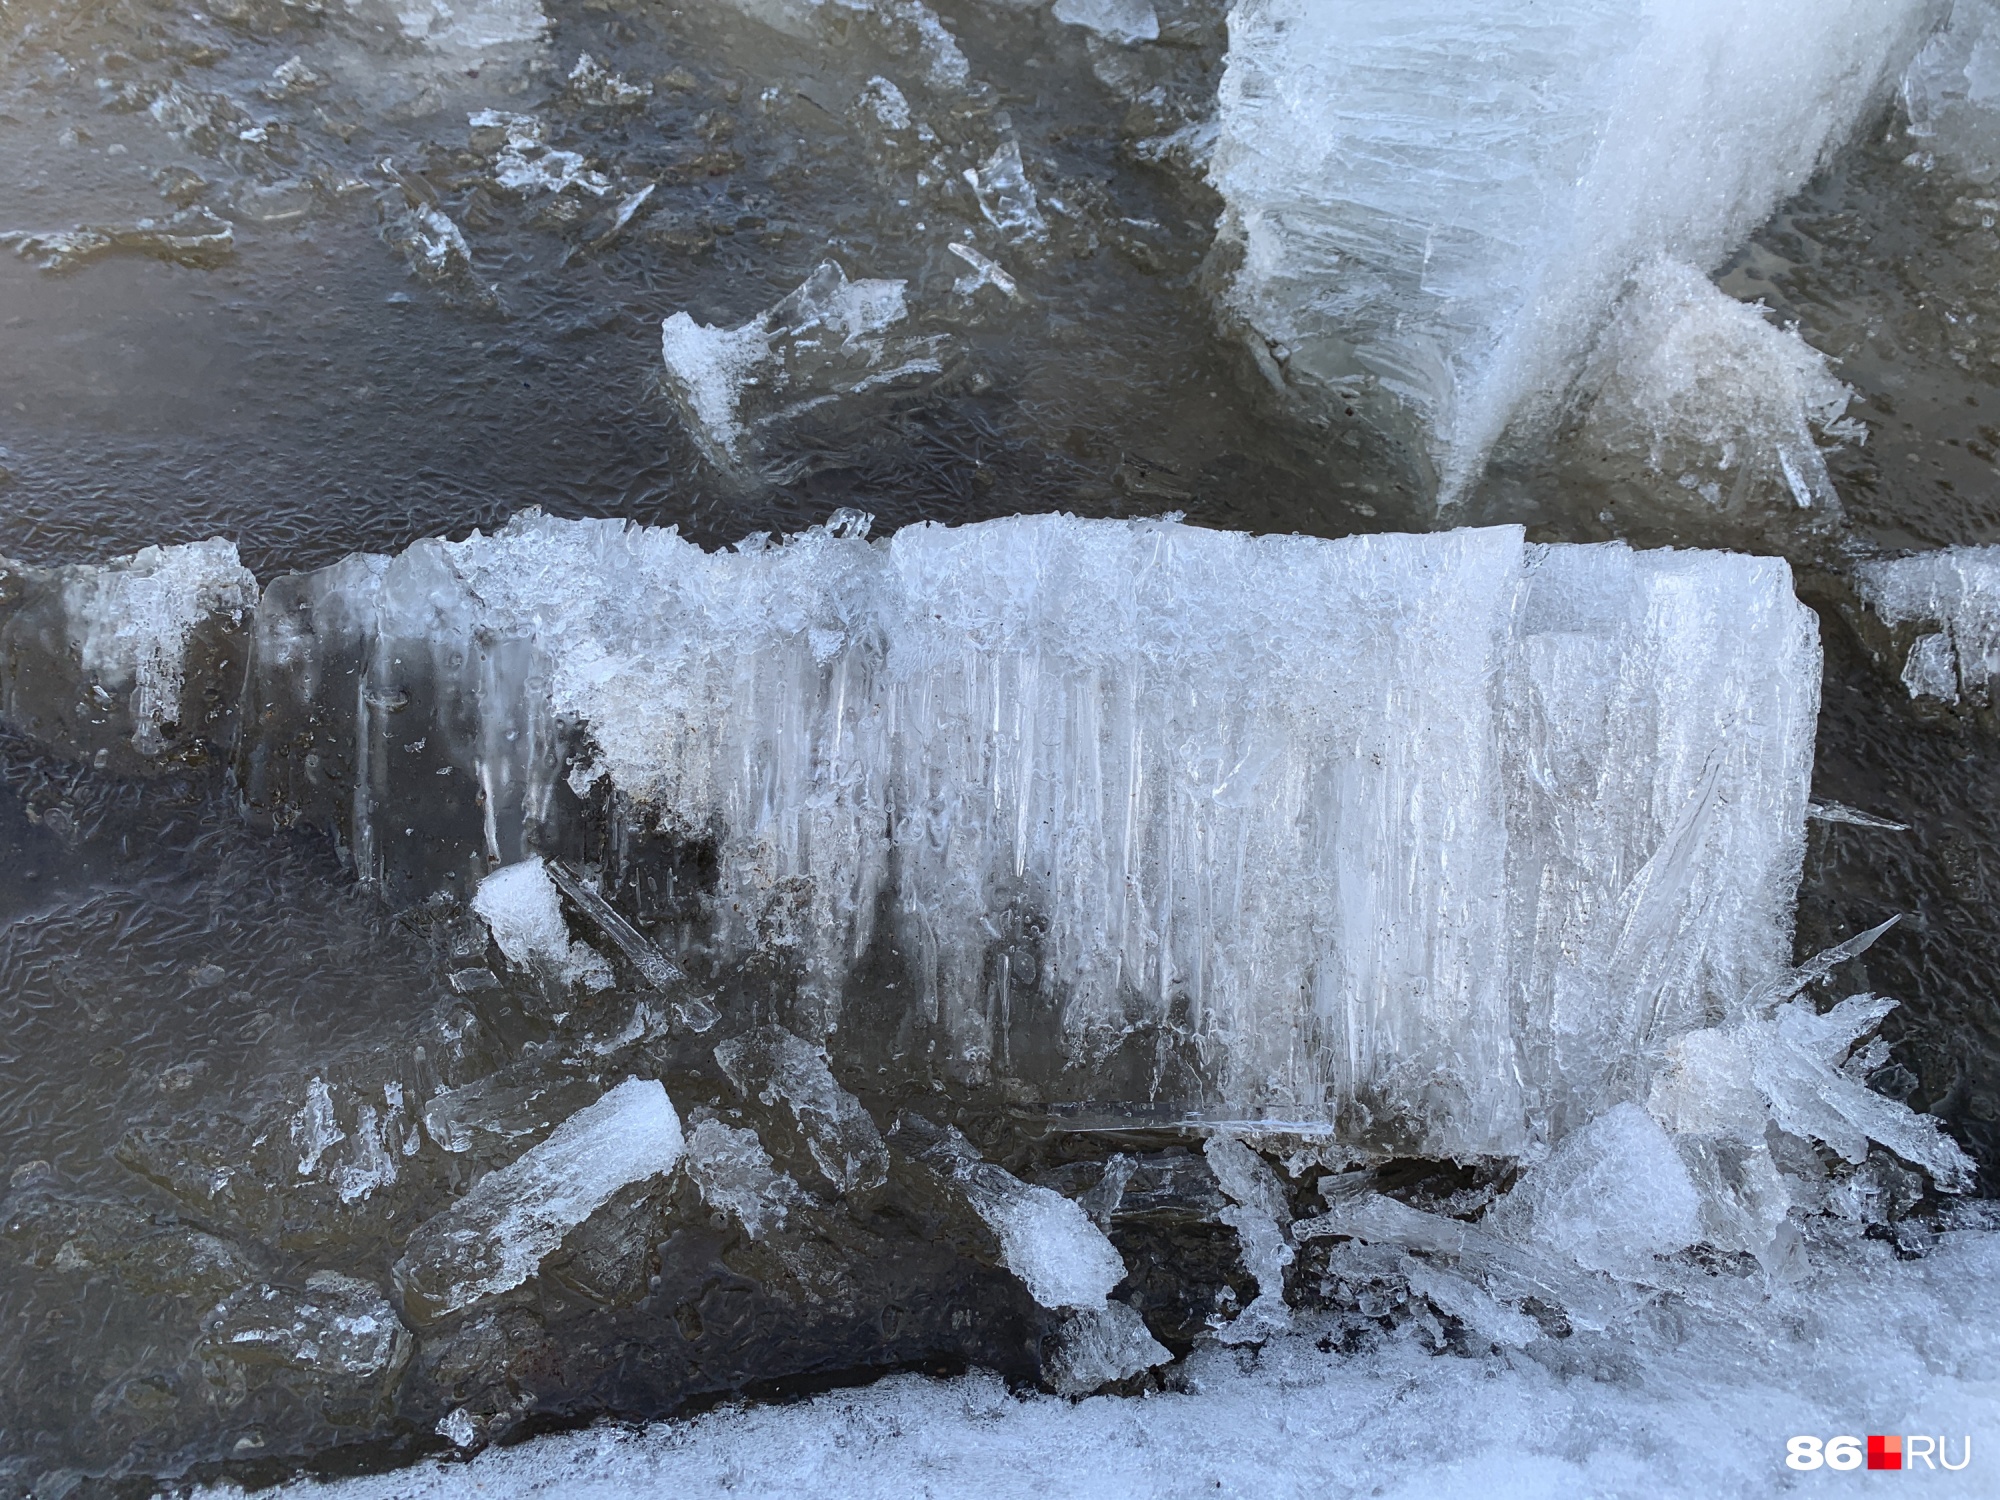 Льдины будто состоят из миллионов тонких ледяных трубочек